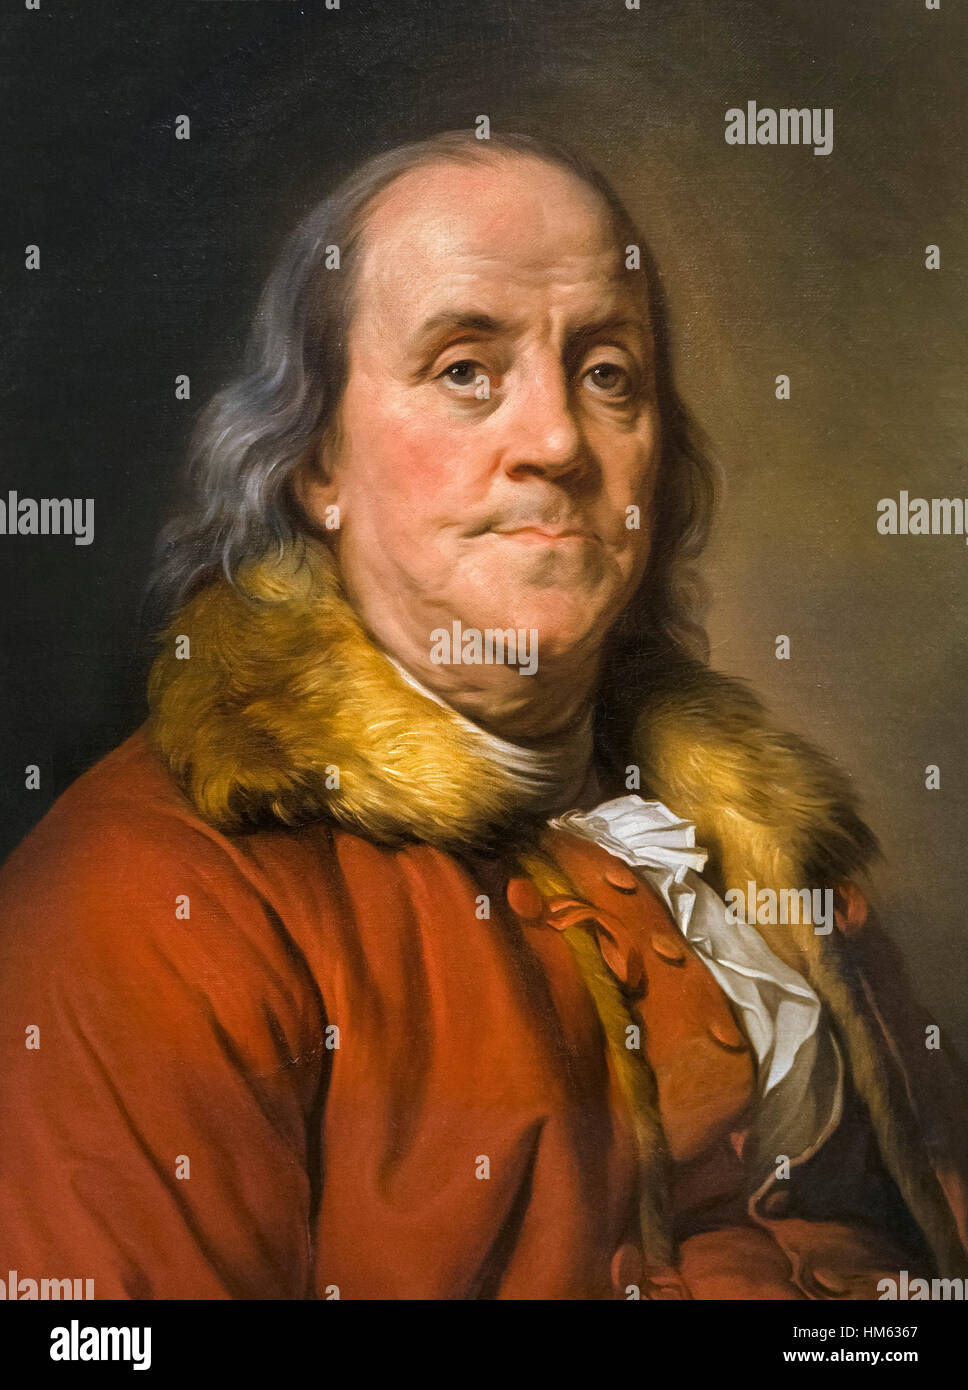 Benjamin Franklin. Porträt von Duplessis - Pelz-Kragen-Portrait - Öl auf Leinwand, 1778 Stockfoto